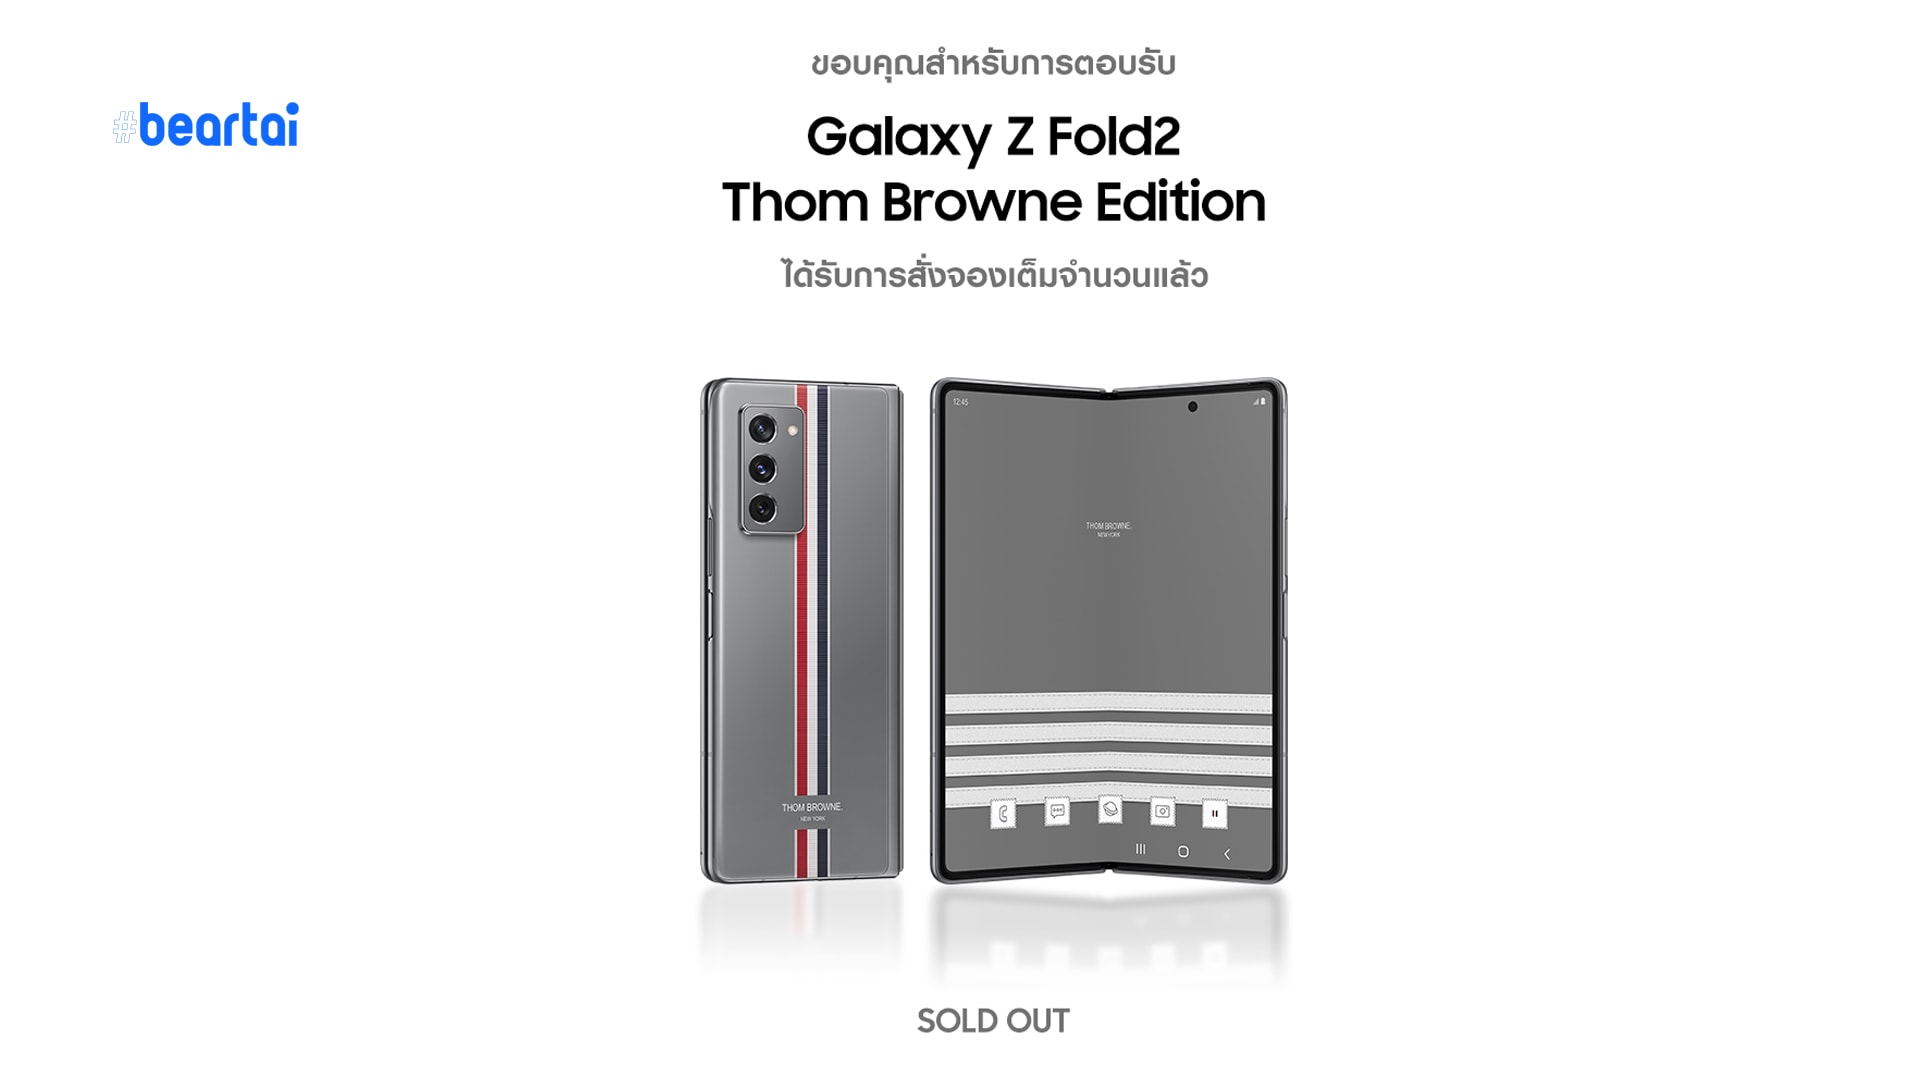 กระแสตอบรับดีเยี่ยม ‘Galaxy Z Fold2 Thom Browne Edition’ Sold-out ภายใน 1 วัน!